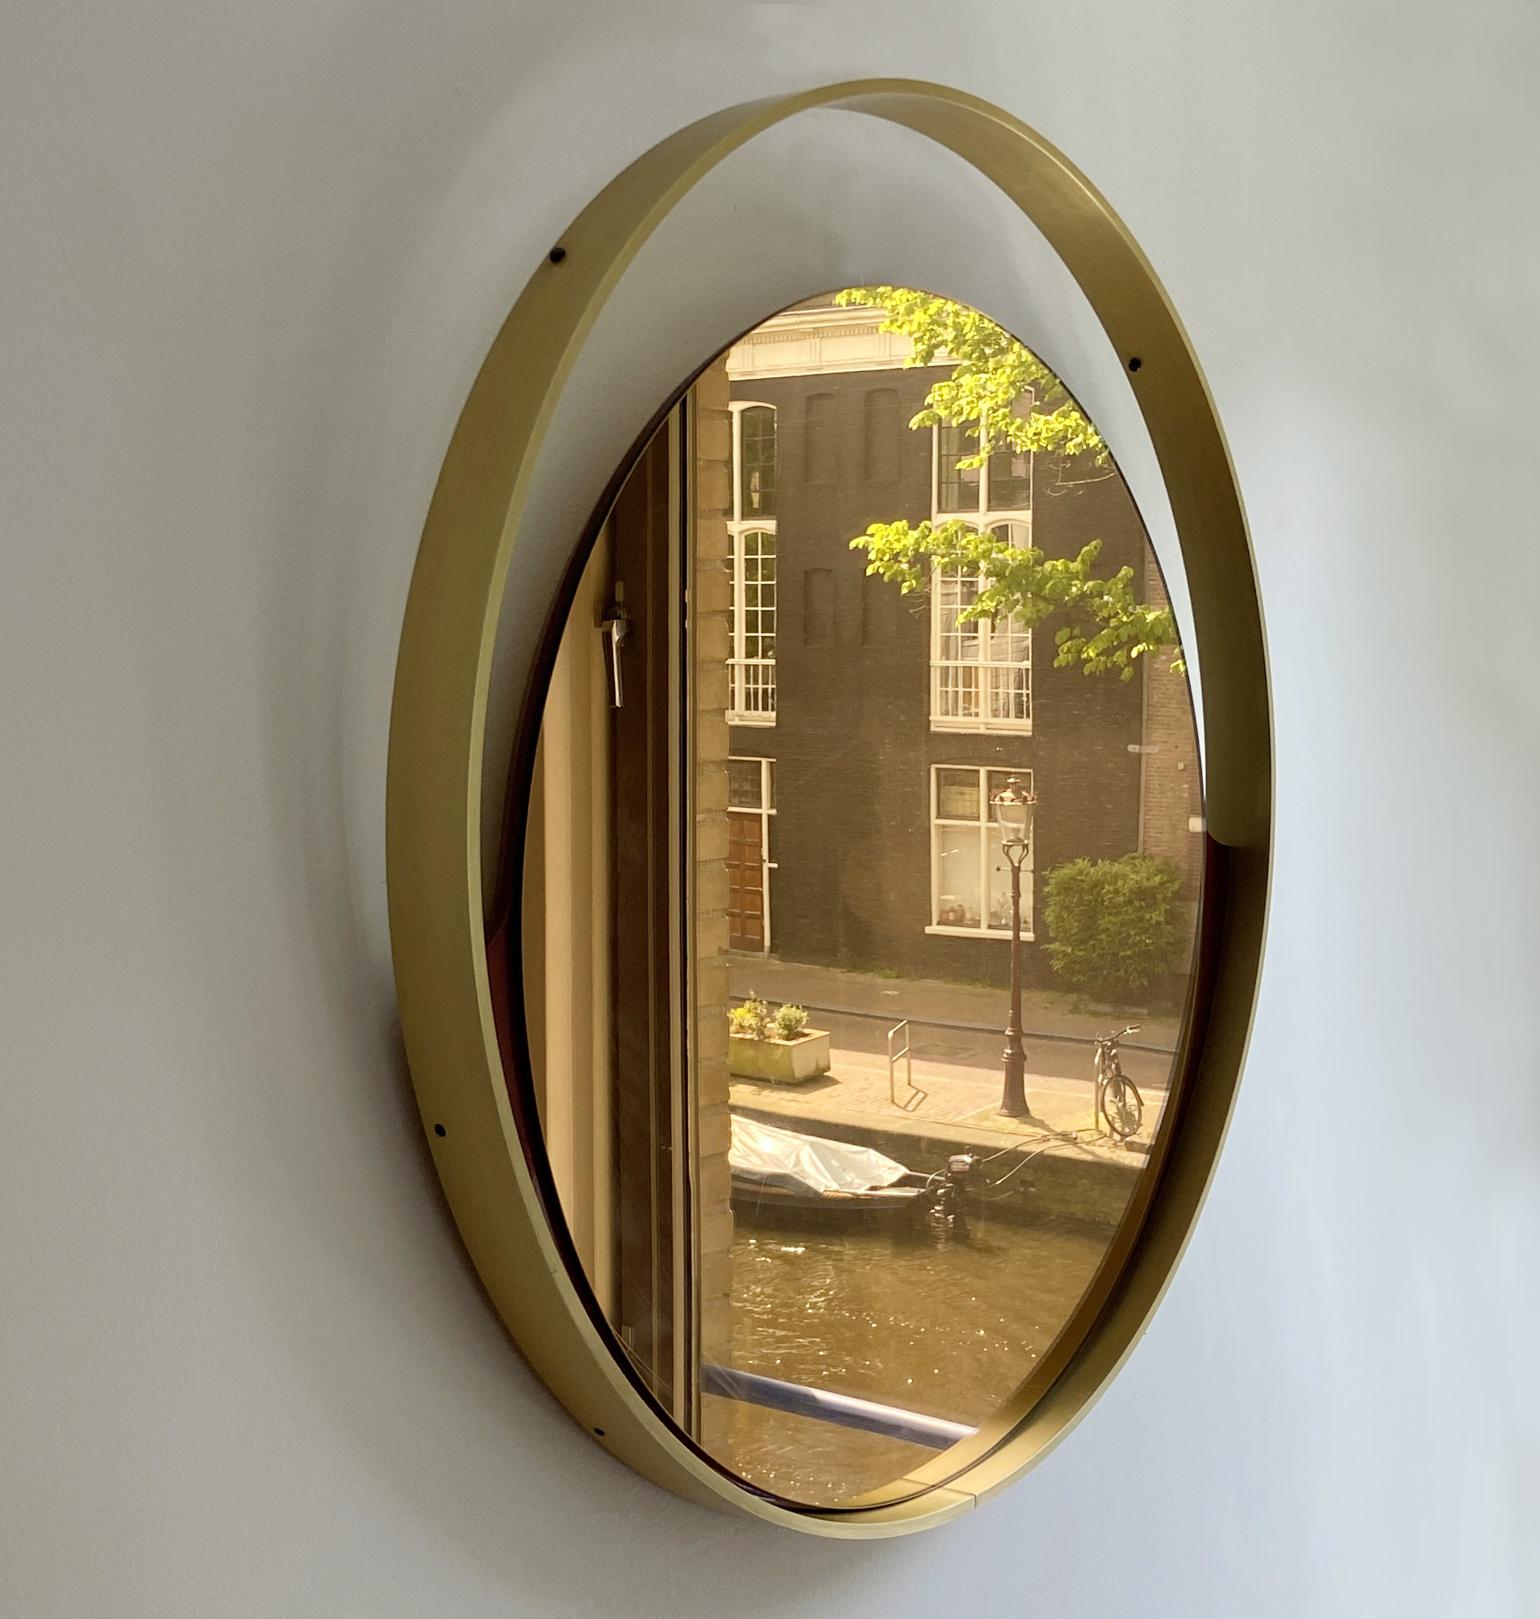 Miroir rond minimaliste en bronze légèrement teinté de la société italienne Rimadesio. La bordure en aluminium est anodisée en or et contient un miroir en bronze qui descend comme un coucher de soleil. Il est relié au cadre par deux ailes émaillées